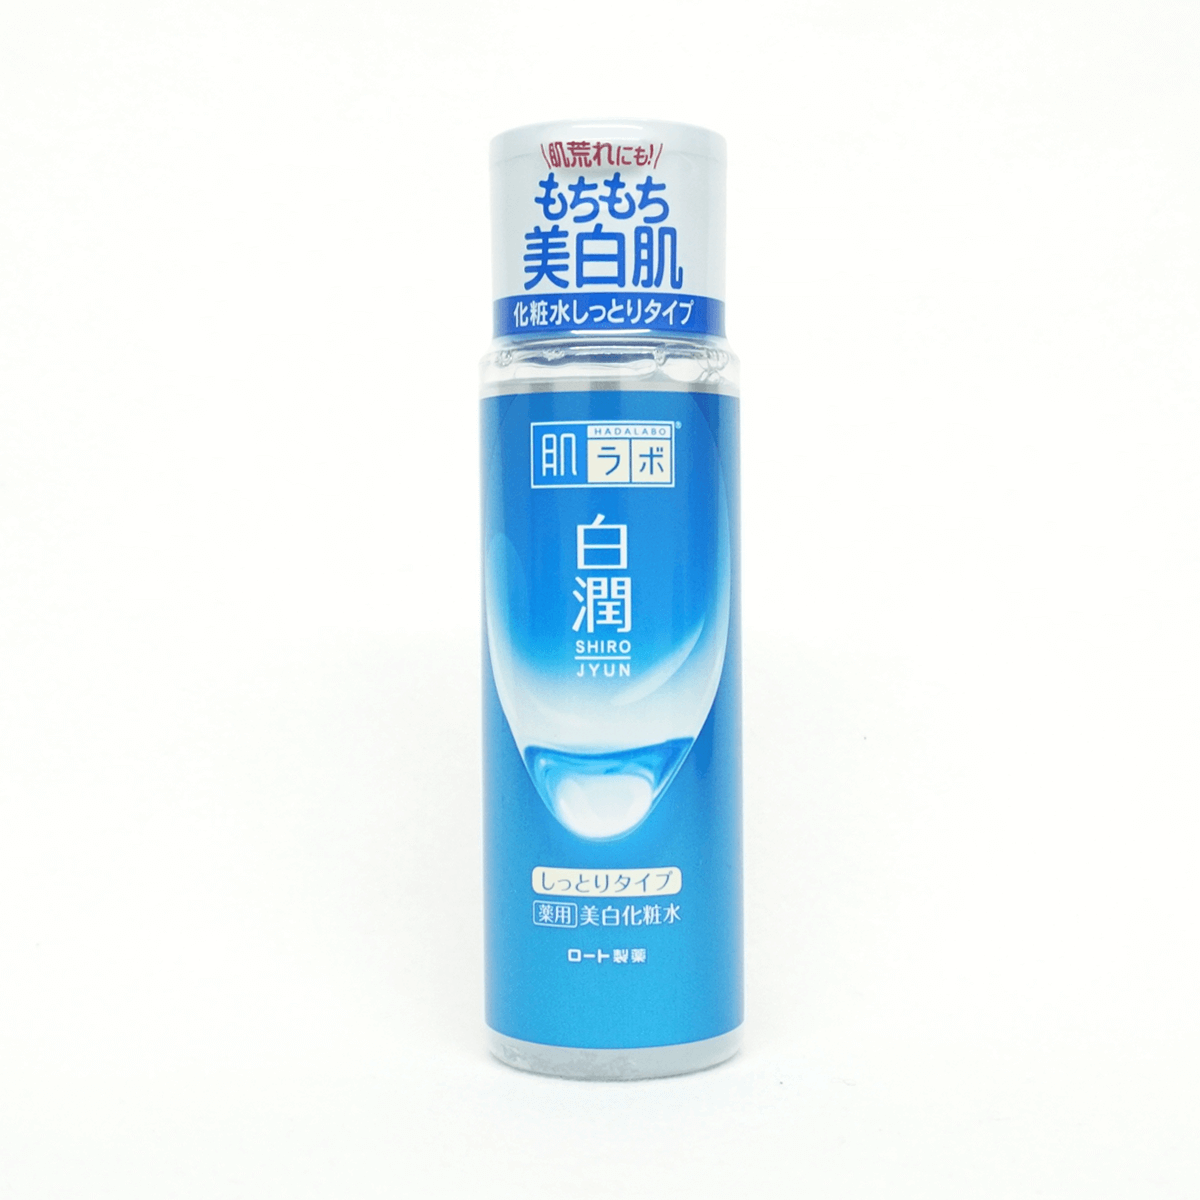 樂敦製藥 肌研 白潤美白化粧水(潤澤型)170ml